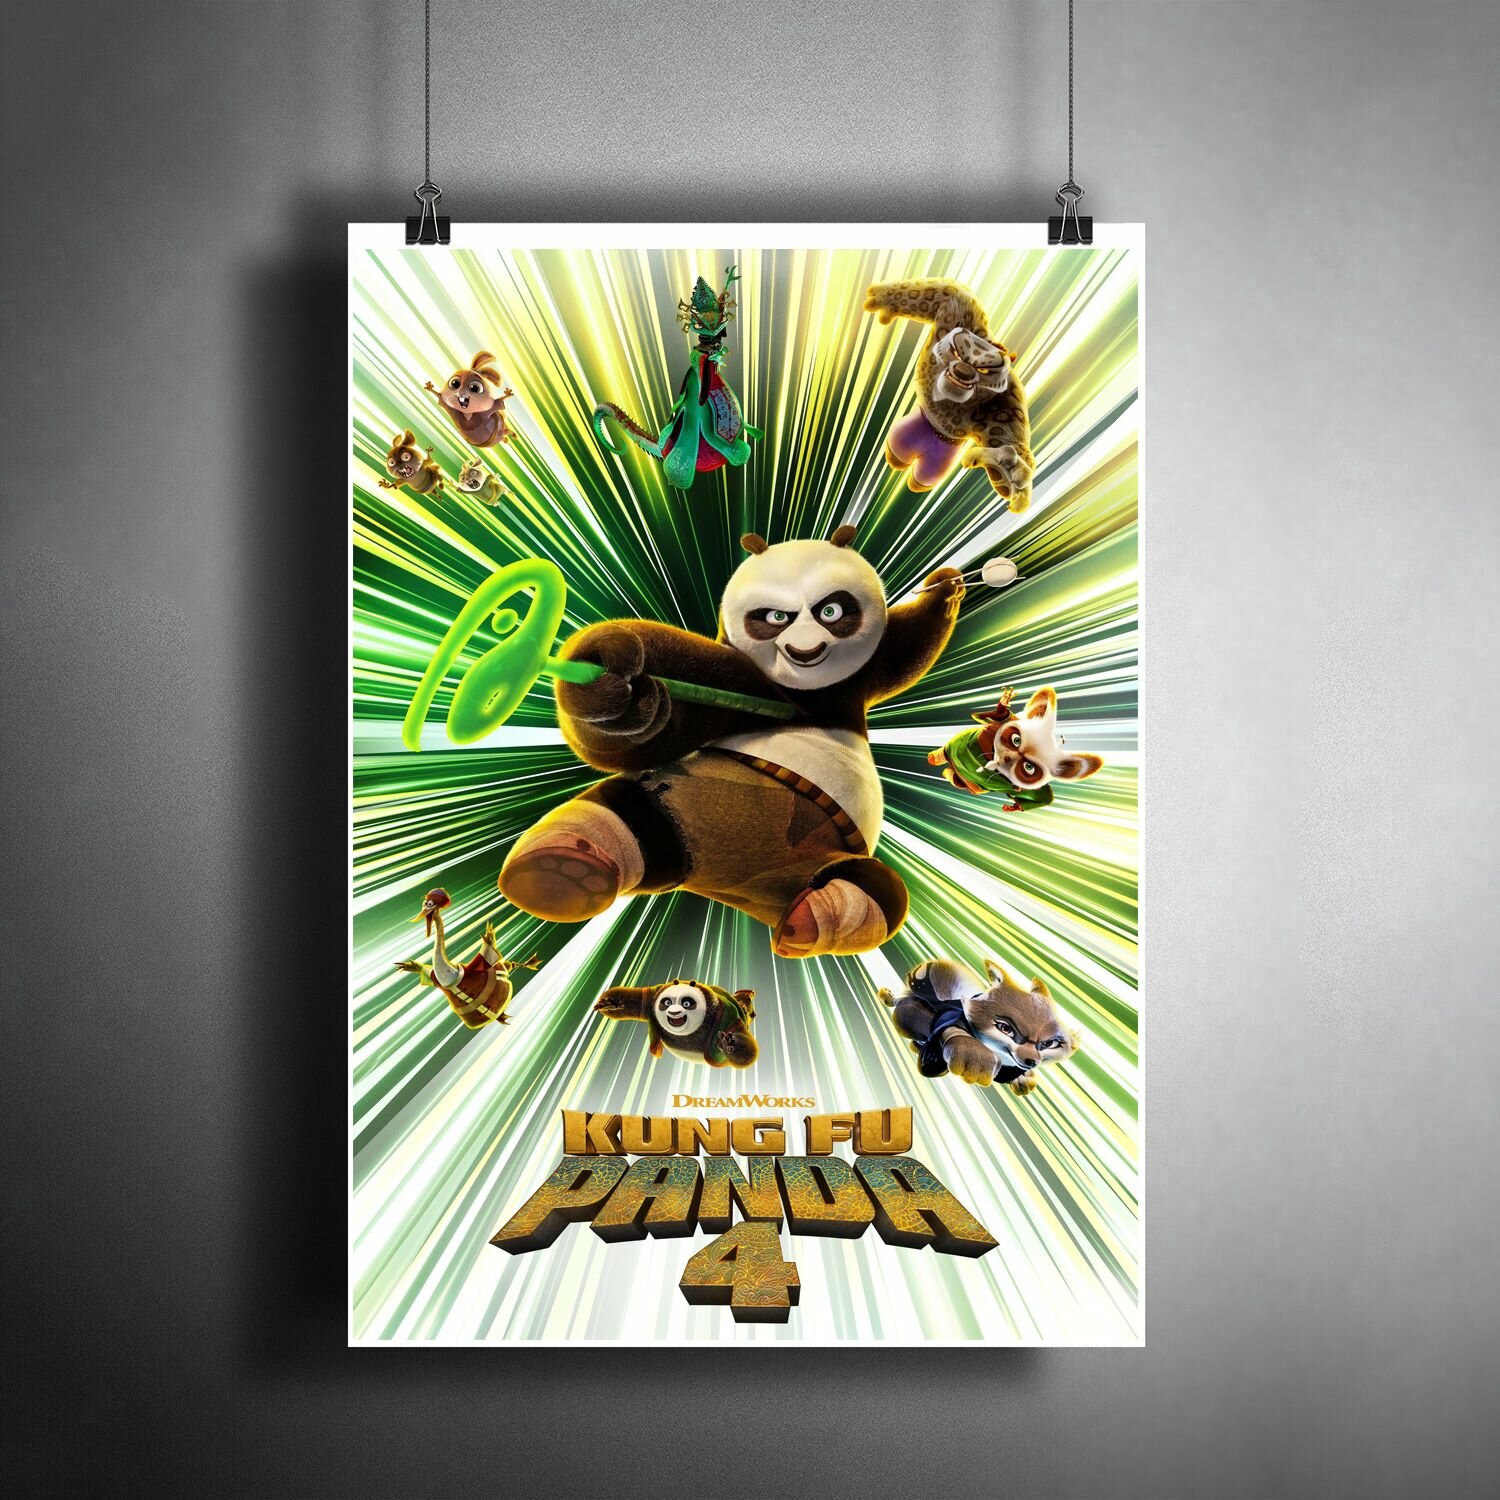 Постер плакат для интерьера "Кунг-фу панда 4" / Декор дома, офиса, комнаты, квартиры, детской A3 (297 x 420 мм)